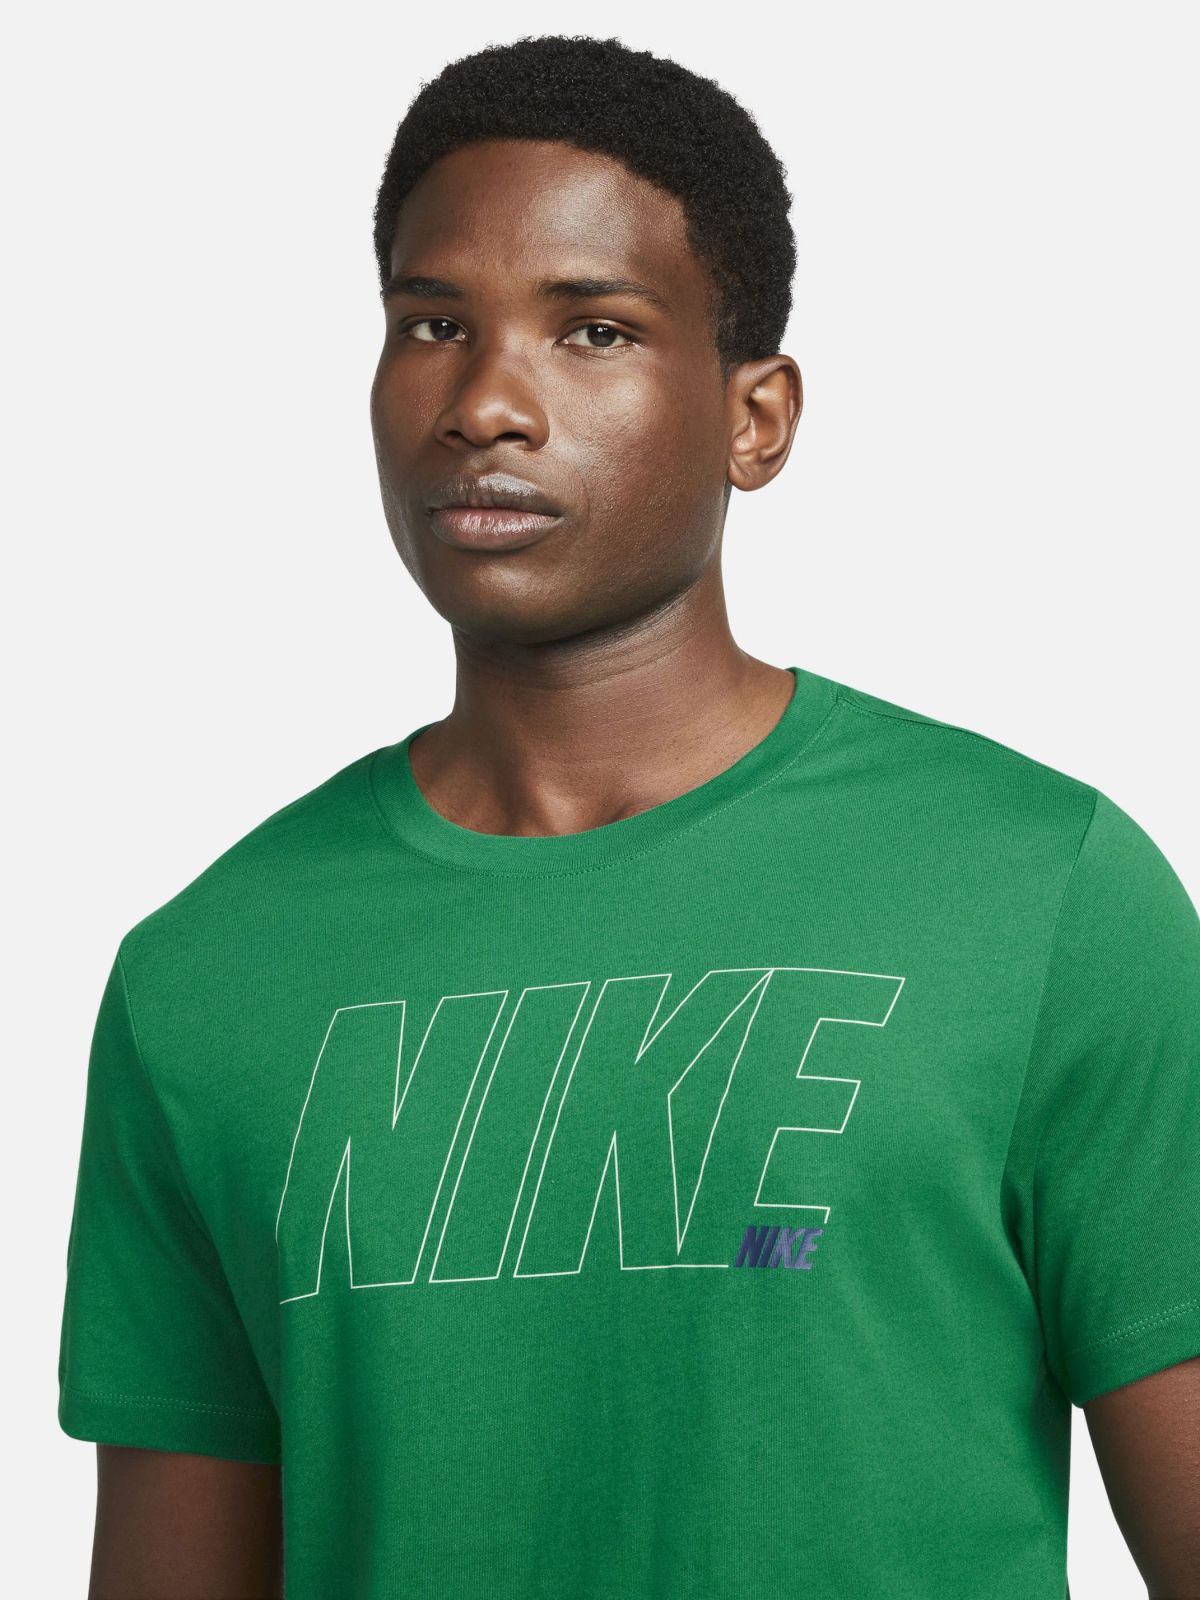  חולצת ספורט Dri-FIT של NIKE